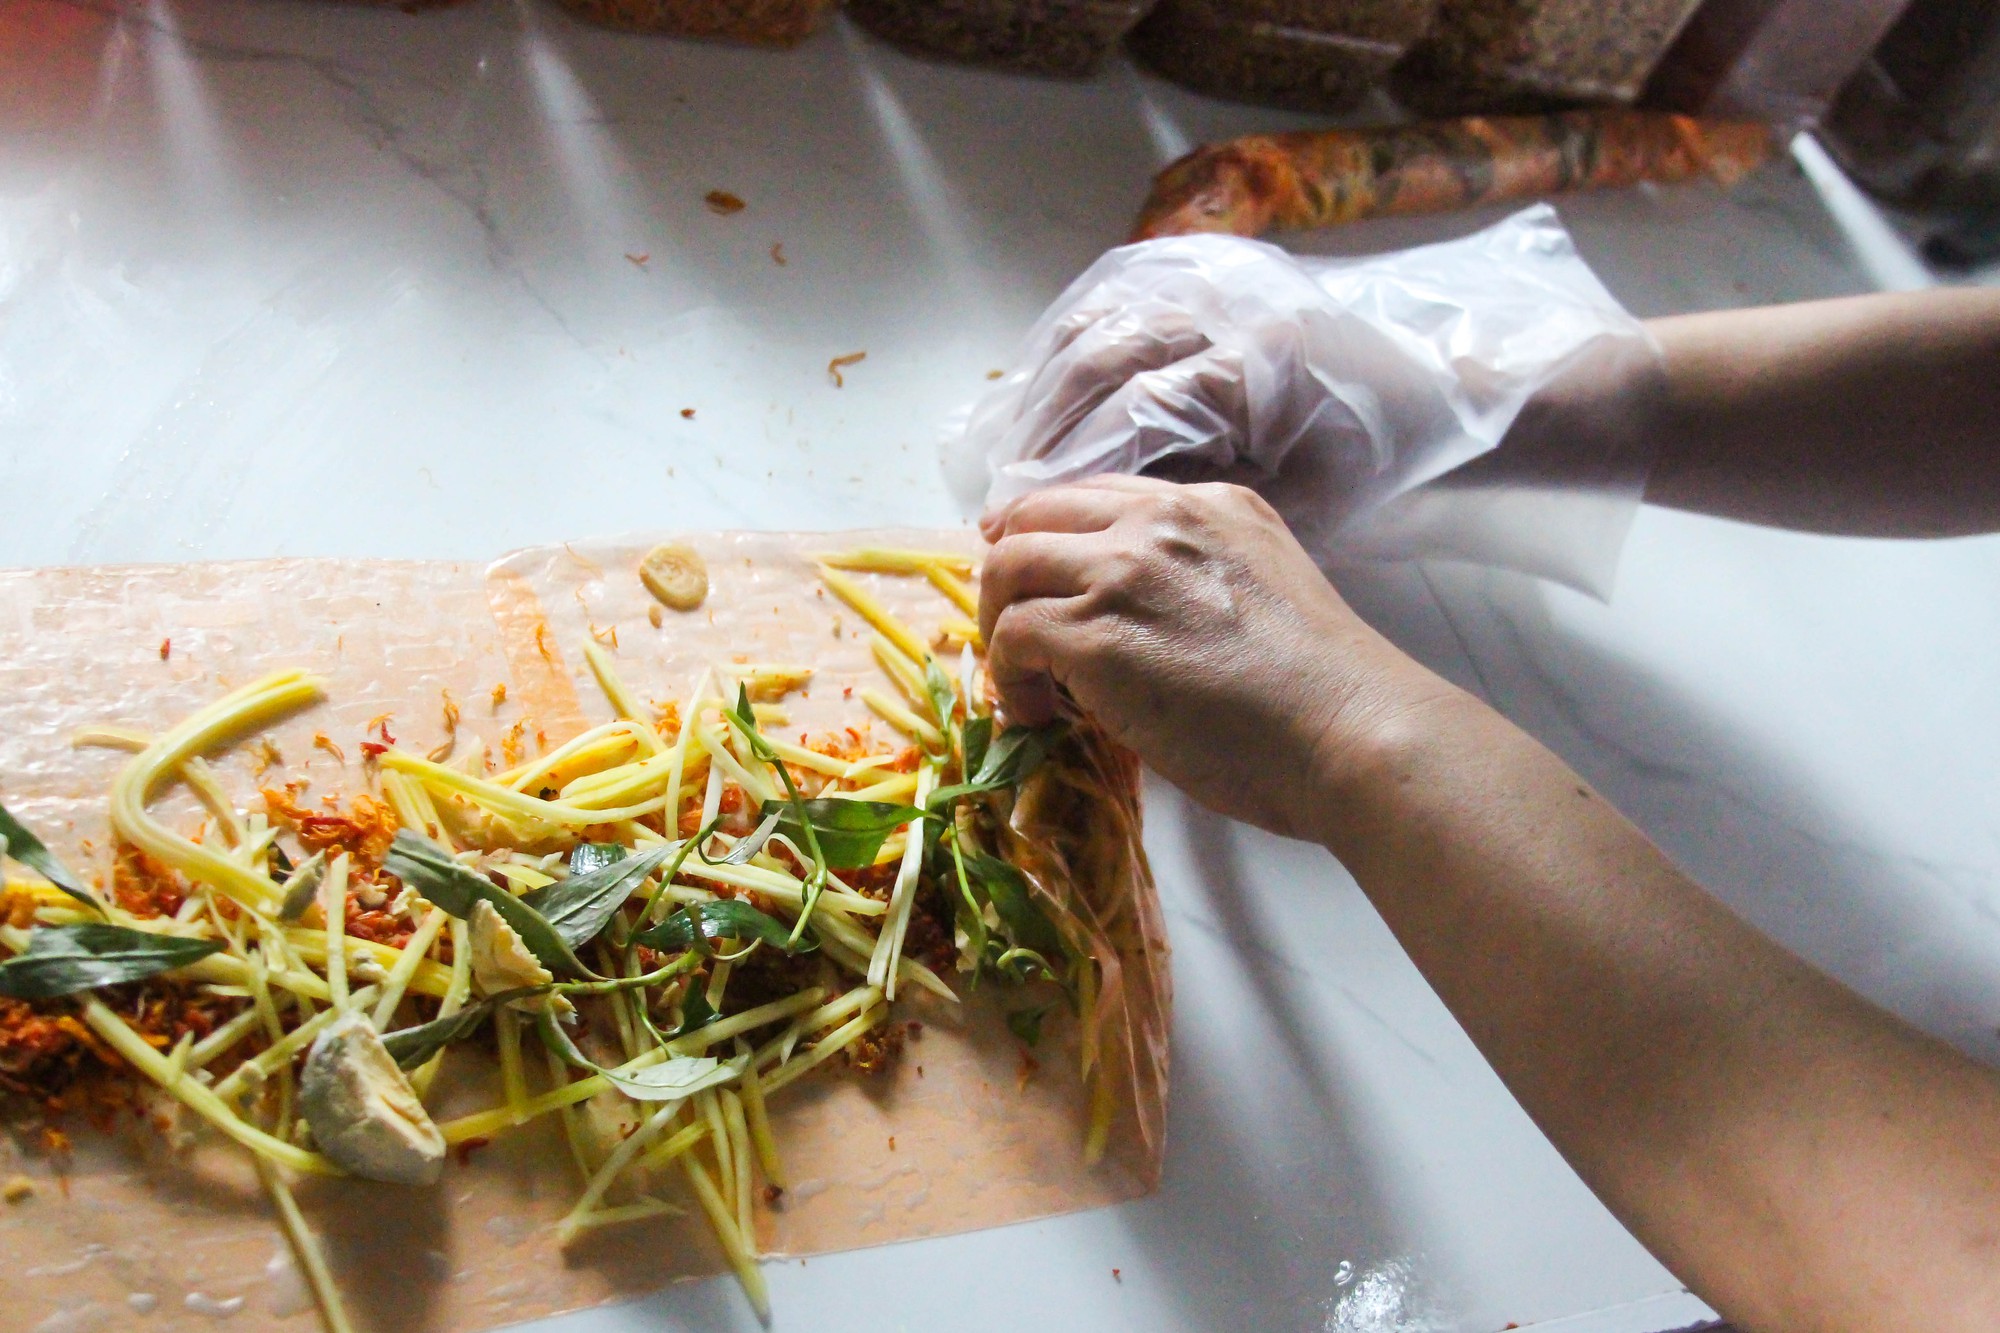 Thành phố Hồ Chí Minh: Du khách tò mò với loại bánh dài cả mét - Ảnh 4.